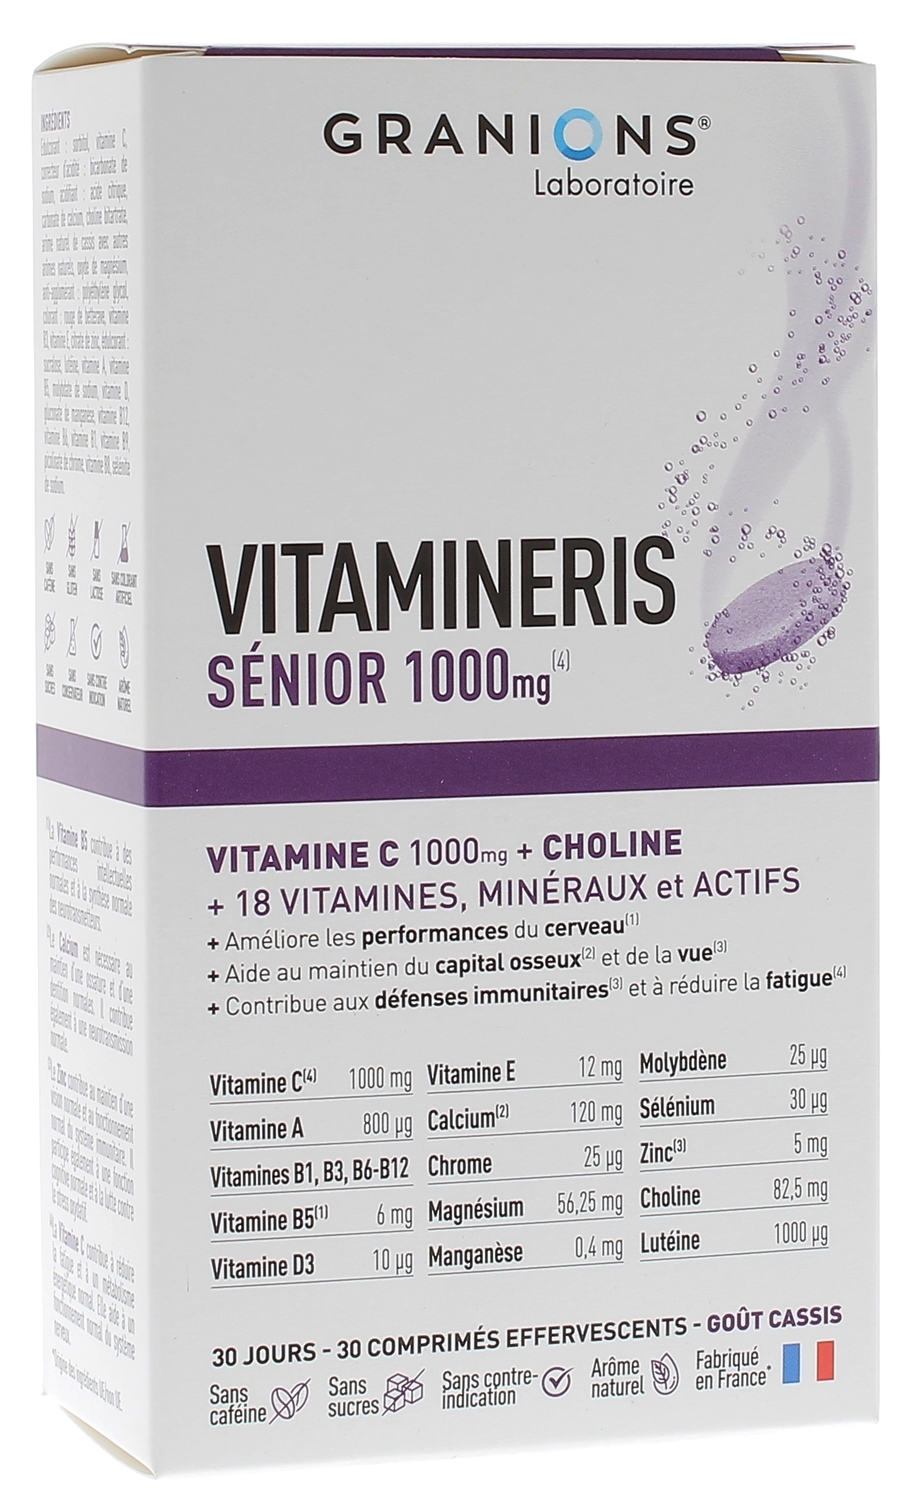 Vitamineris Sénior 1000mg Granions - boîte de 30 comprimés effervescents